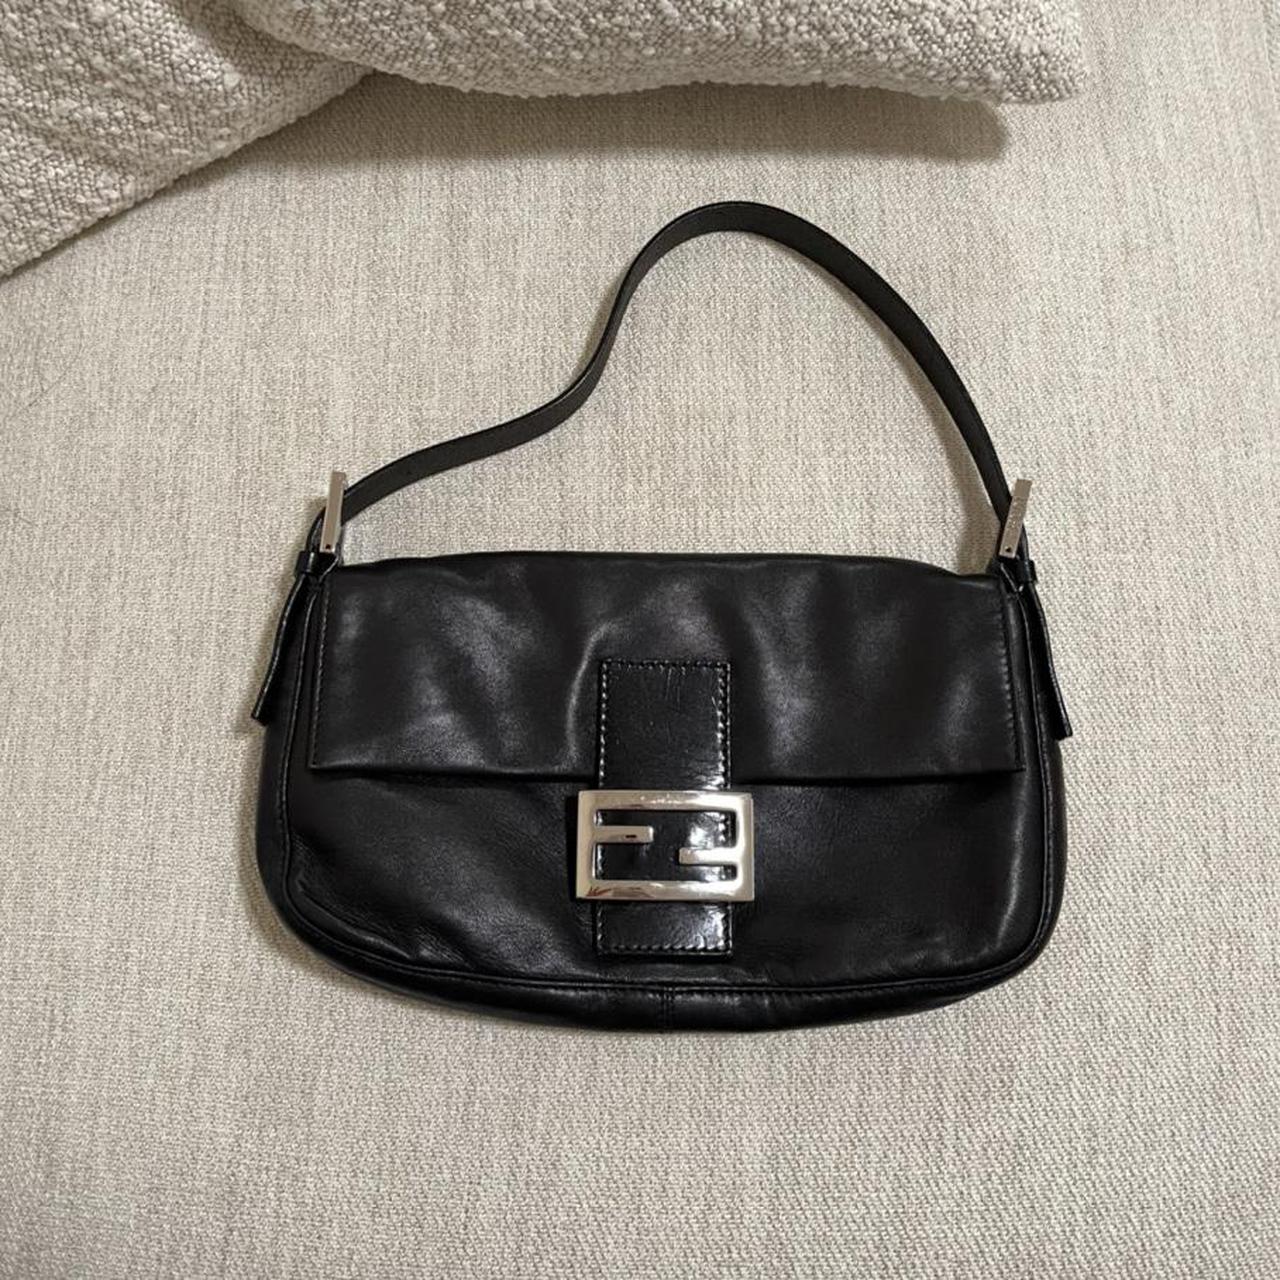 Vintage Black Leather Fendi Baguette Bag Rare... - Depop